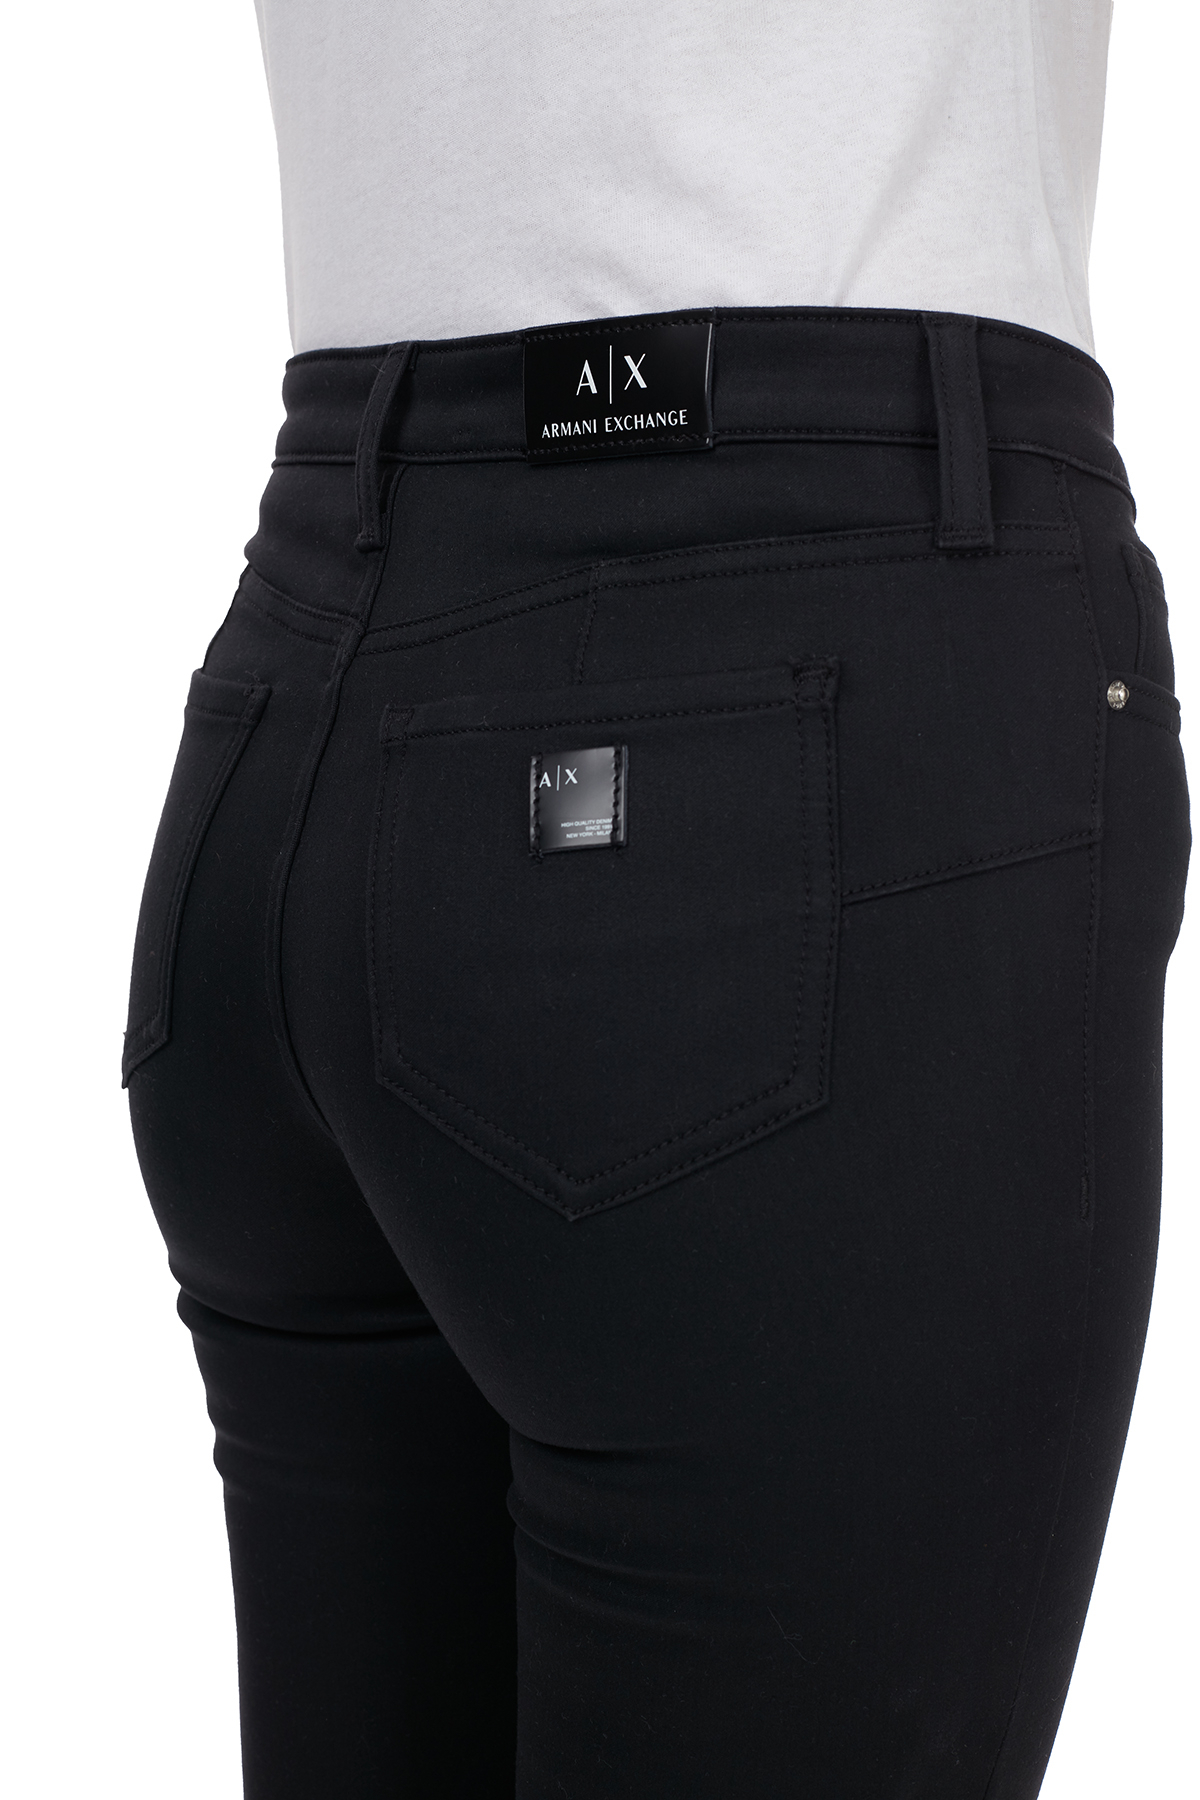 Armani Exchange Süper Skinny Fit J69 Jeans Bayan Kot Pantolon 6HYJ69 Y2QMZ 0204 SİYAH